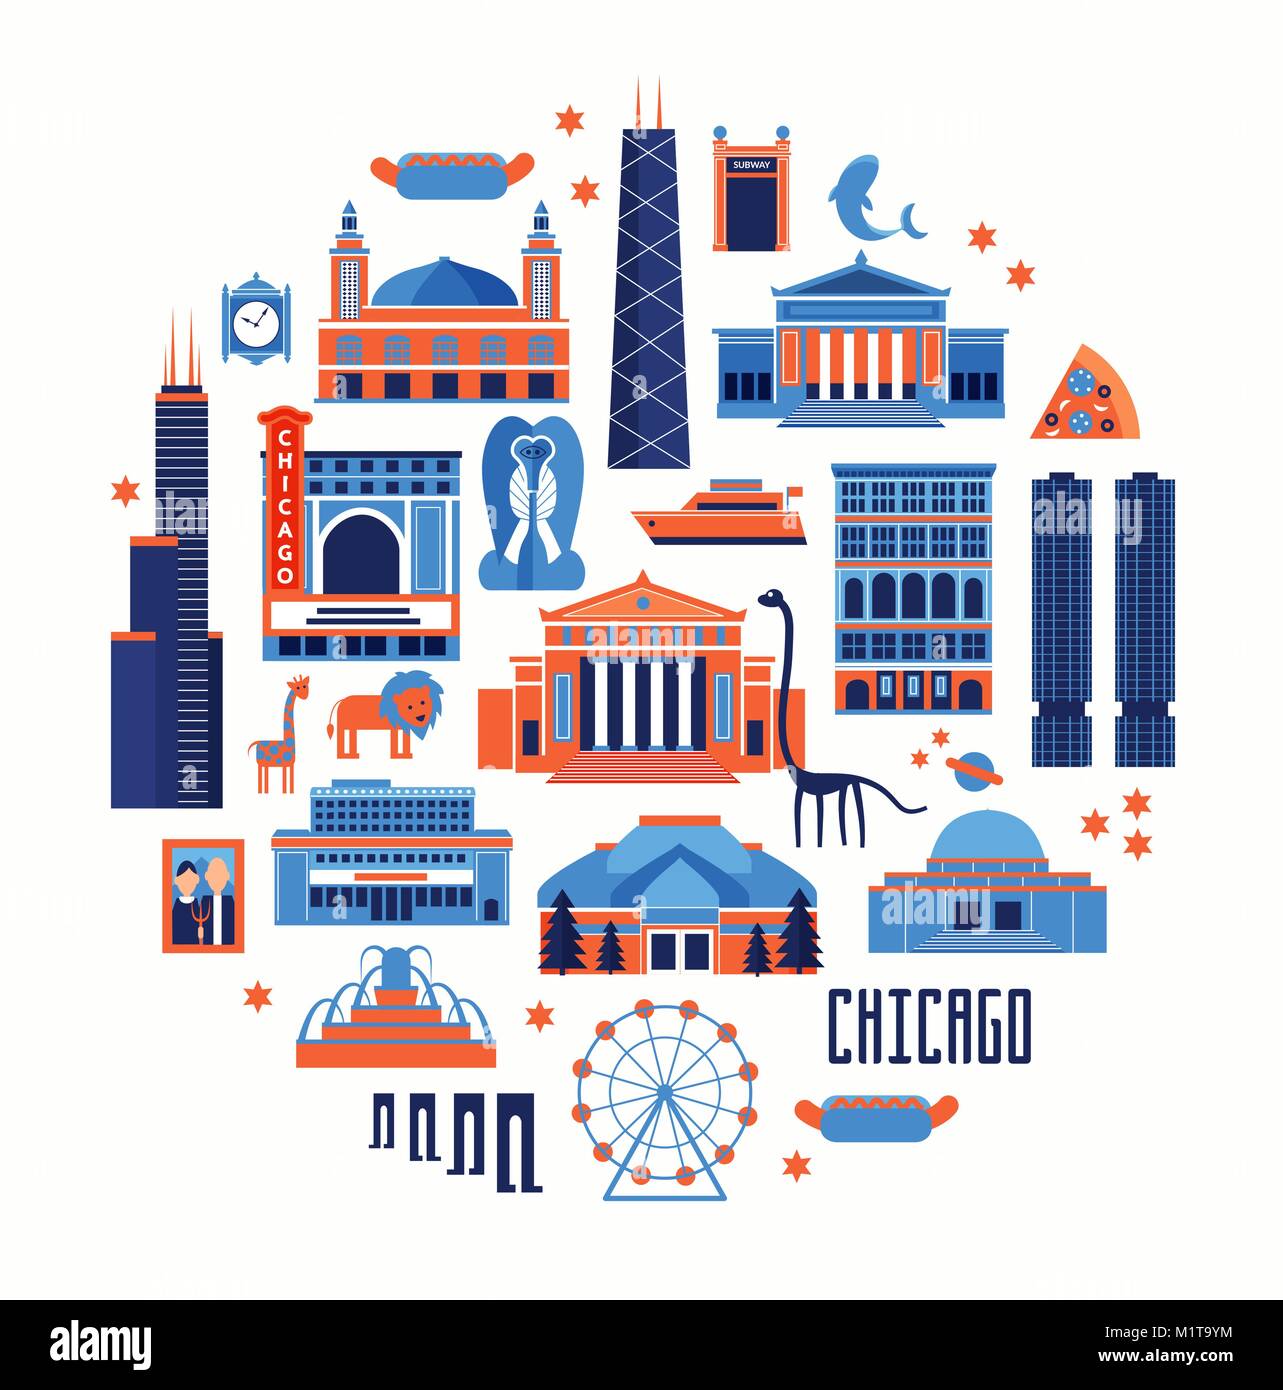 Blaue und rote Vektor einrichten von Chicago' berühmte Sehenswürdigkeiten. Flat Style entworfen, historischen Gebäuden, Sehenswürdigkeiten und Museen auf weißem Hintergrund. Stock Vektor